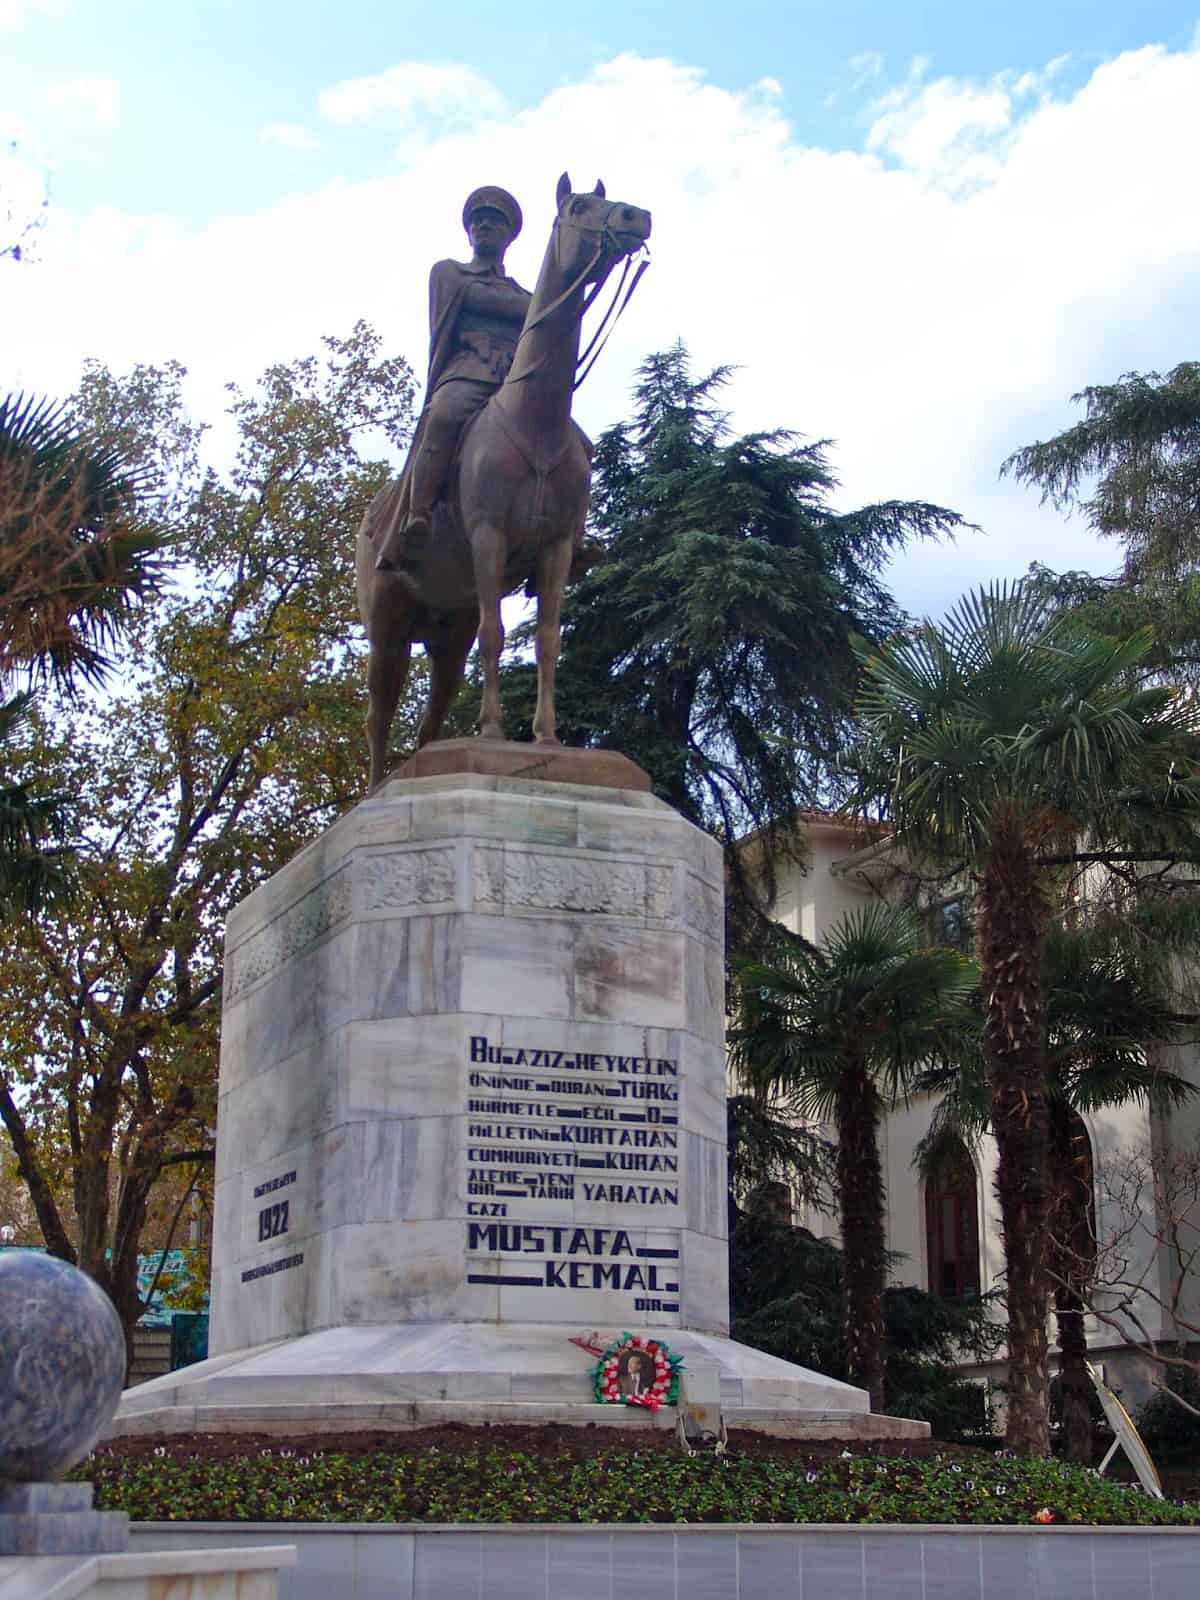 Atatürk monument in Bursa, Turkey